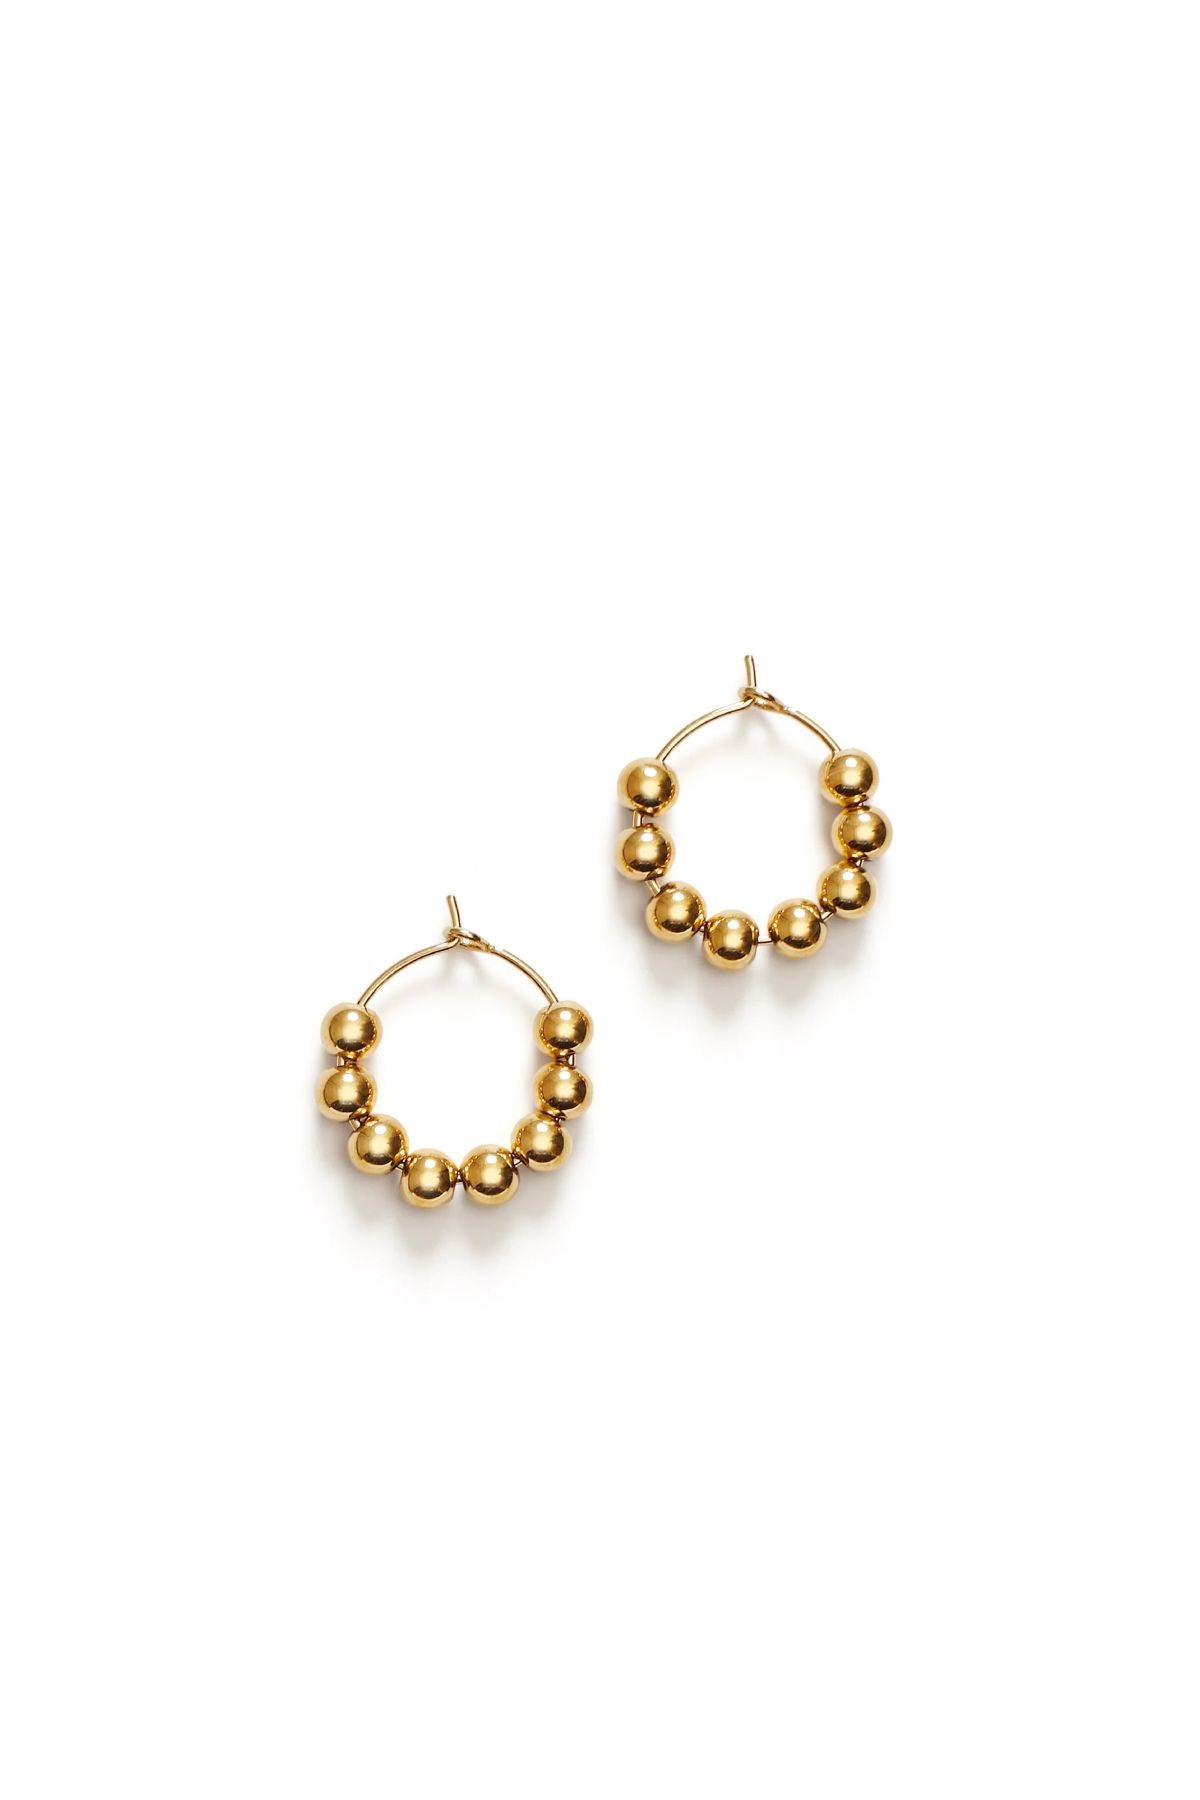 Anni Lu Petit Goldie Hoop Earrings - Gold